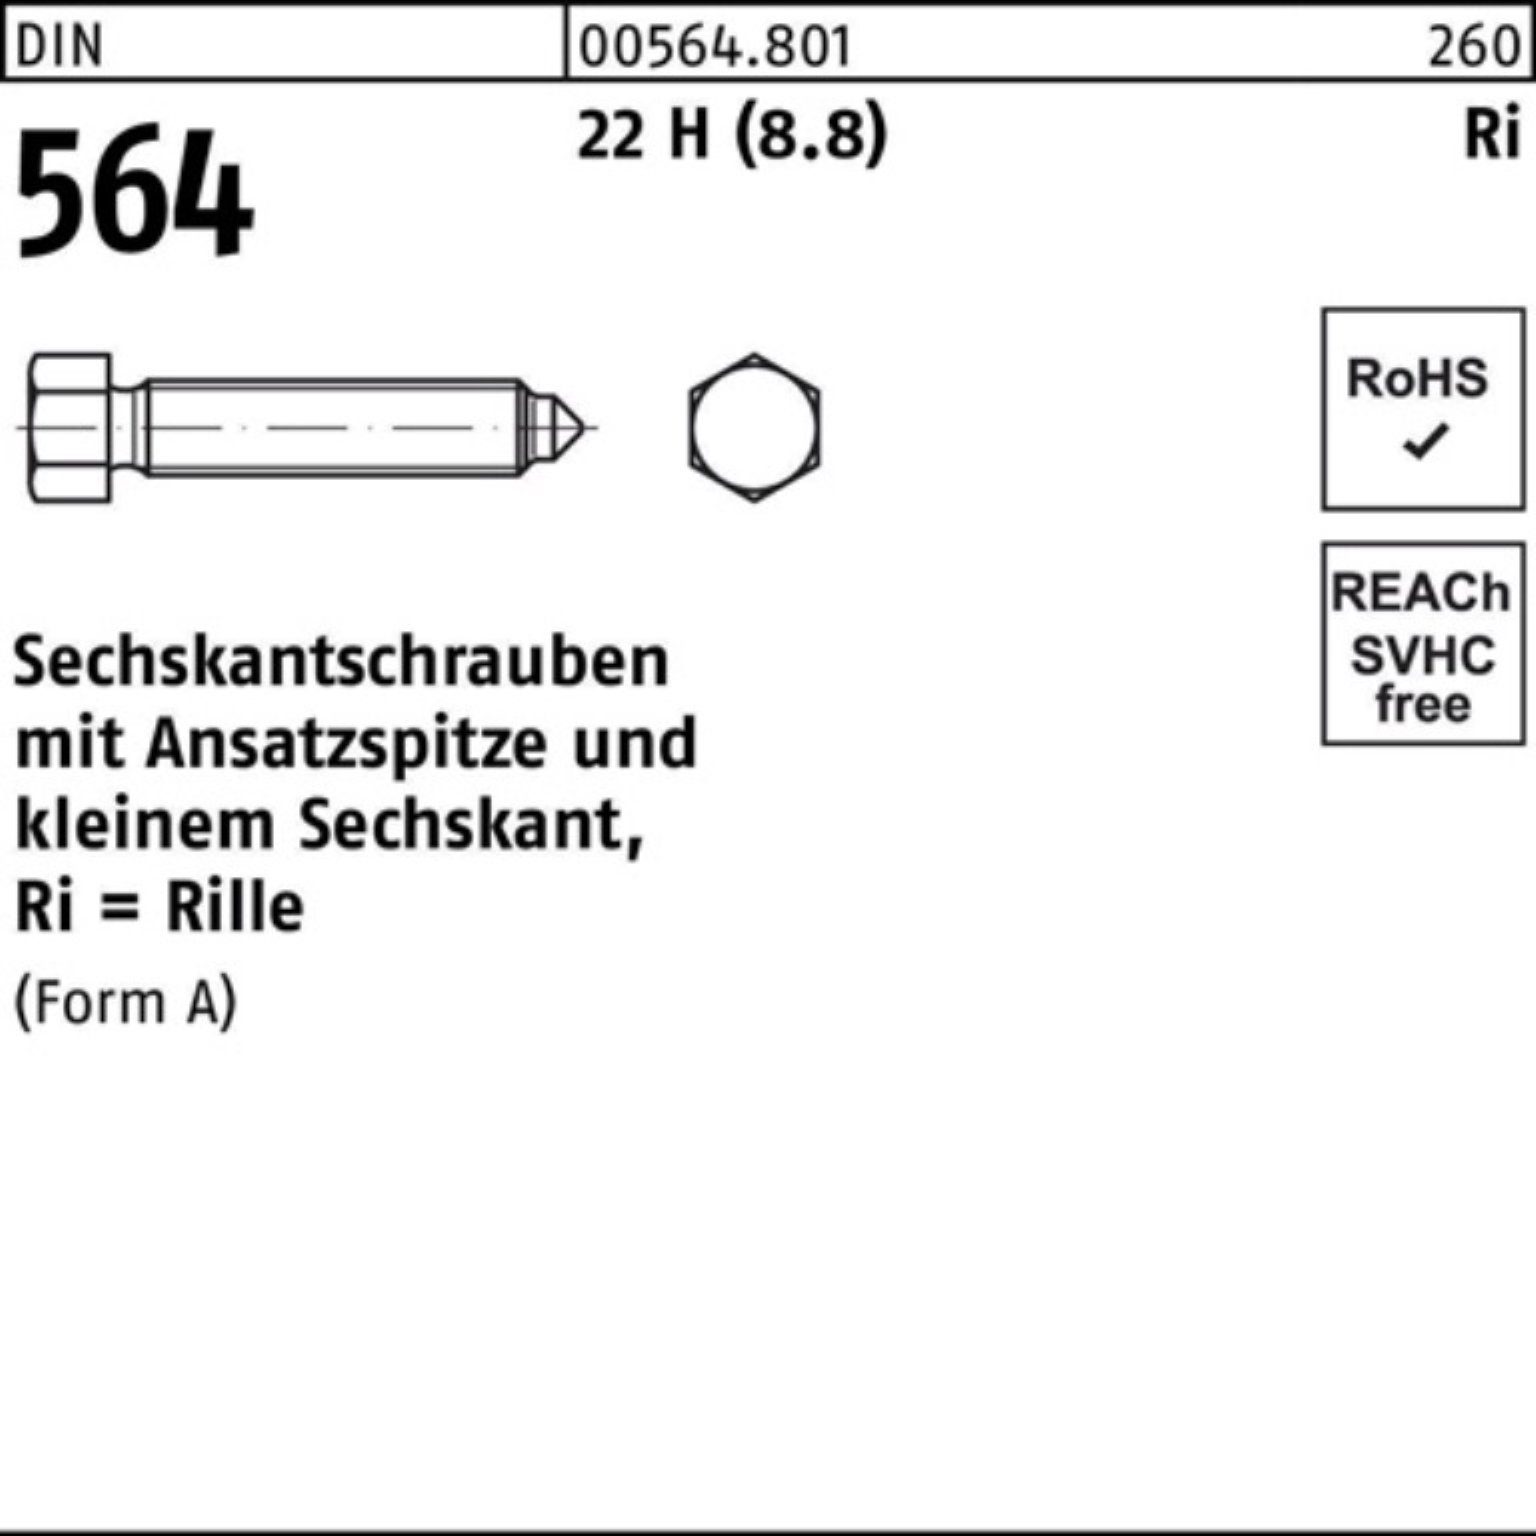 Reyher Sechskantschraube 100er Pack Sechskantschraube DIN 564 Ansatzspitze AM 6x 12 22 H (8.8)